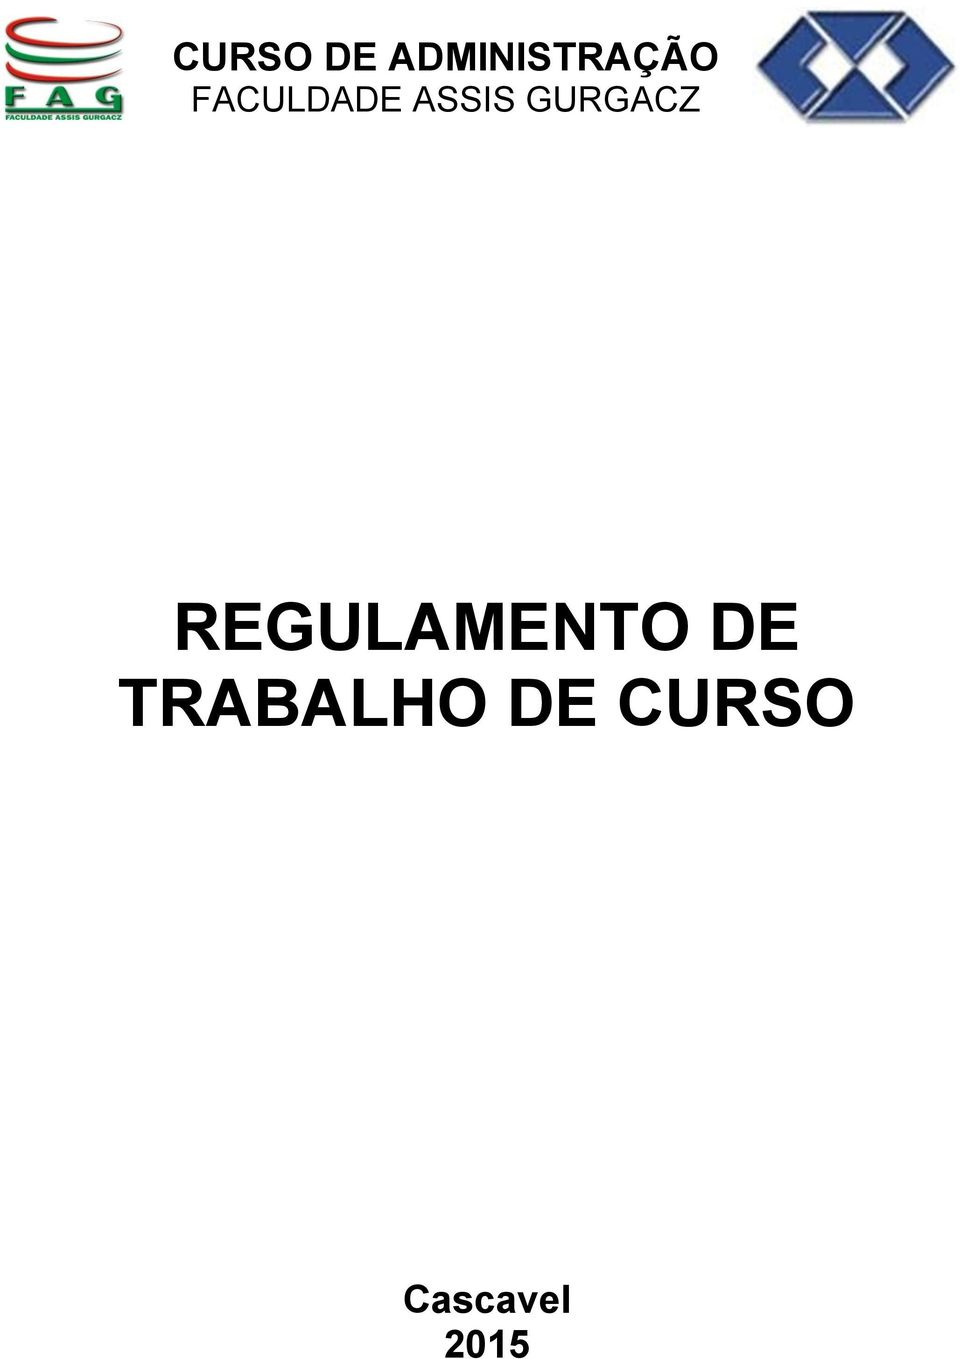 REGULAMENTO DE TRABALHO